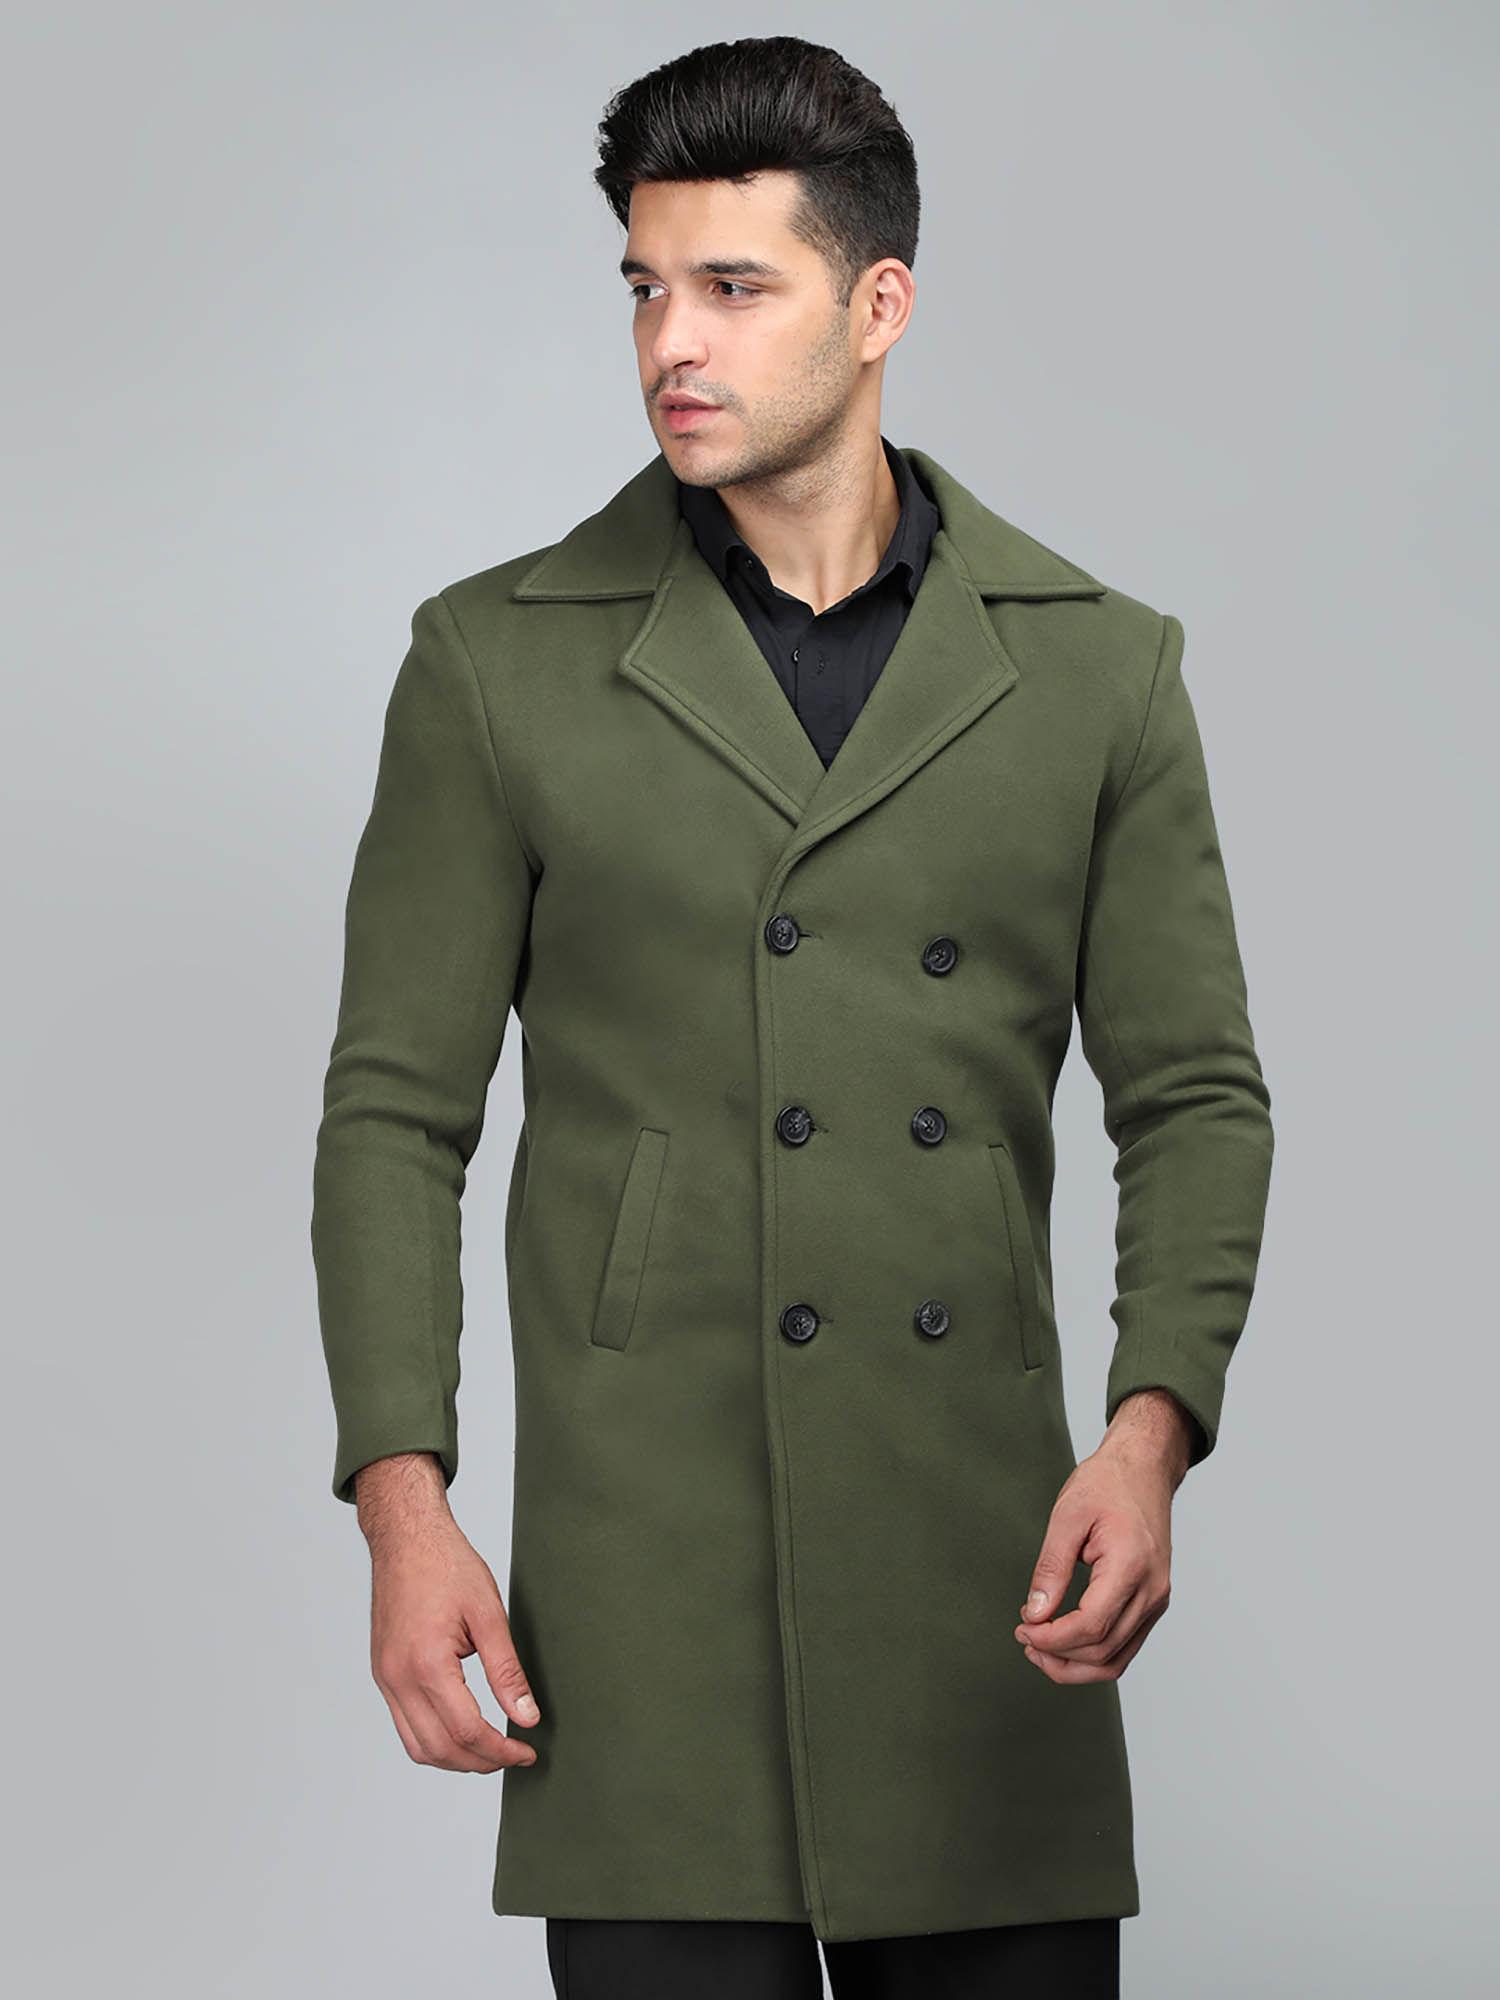 men winter wear long coat olive green